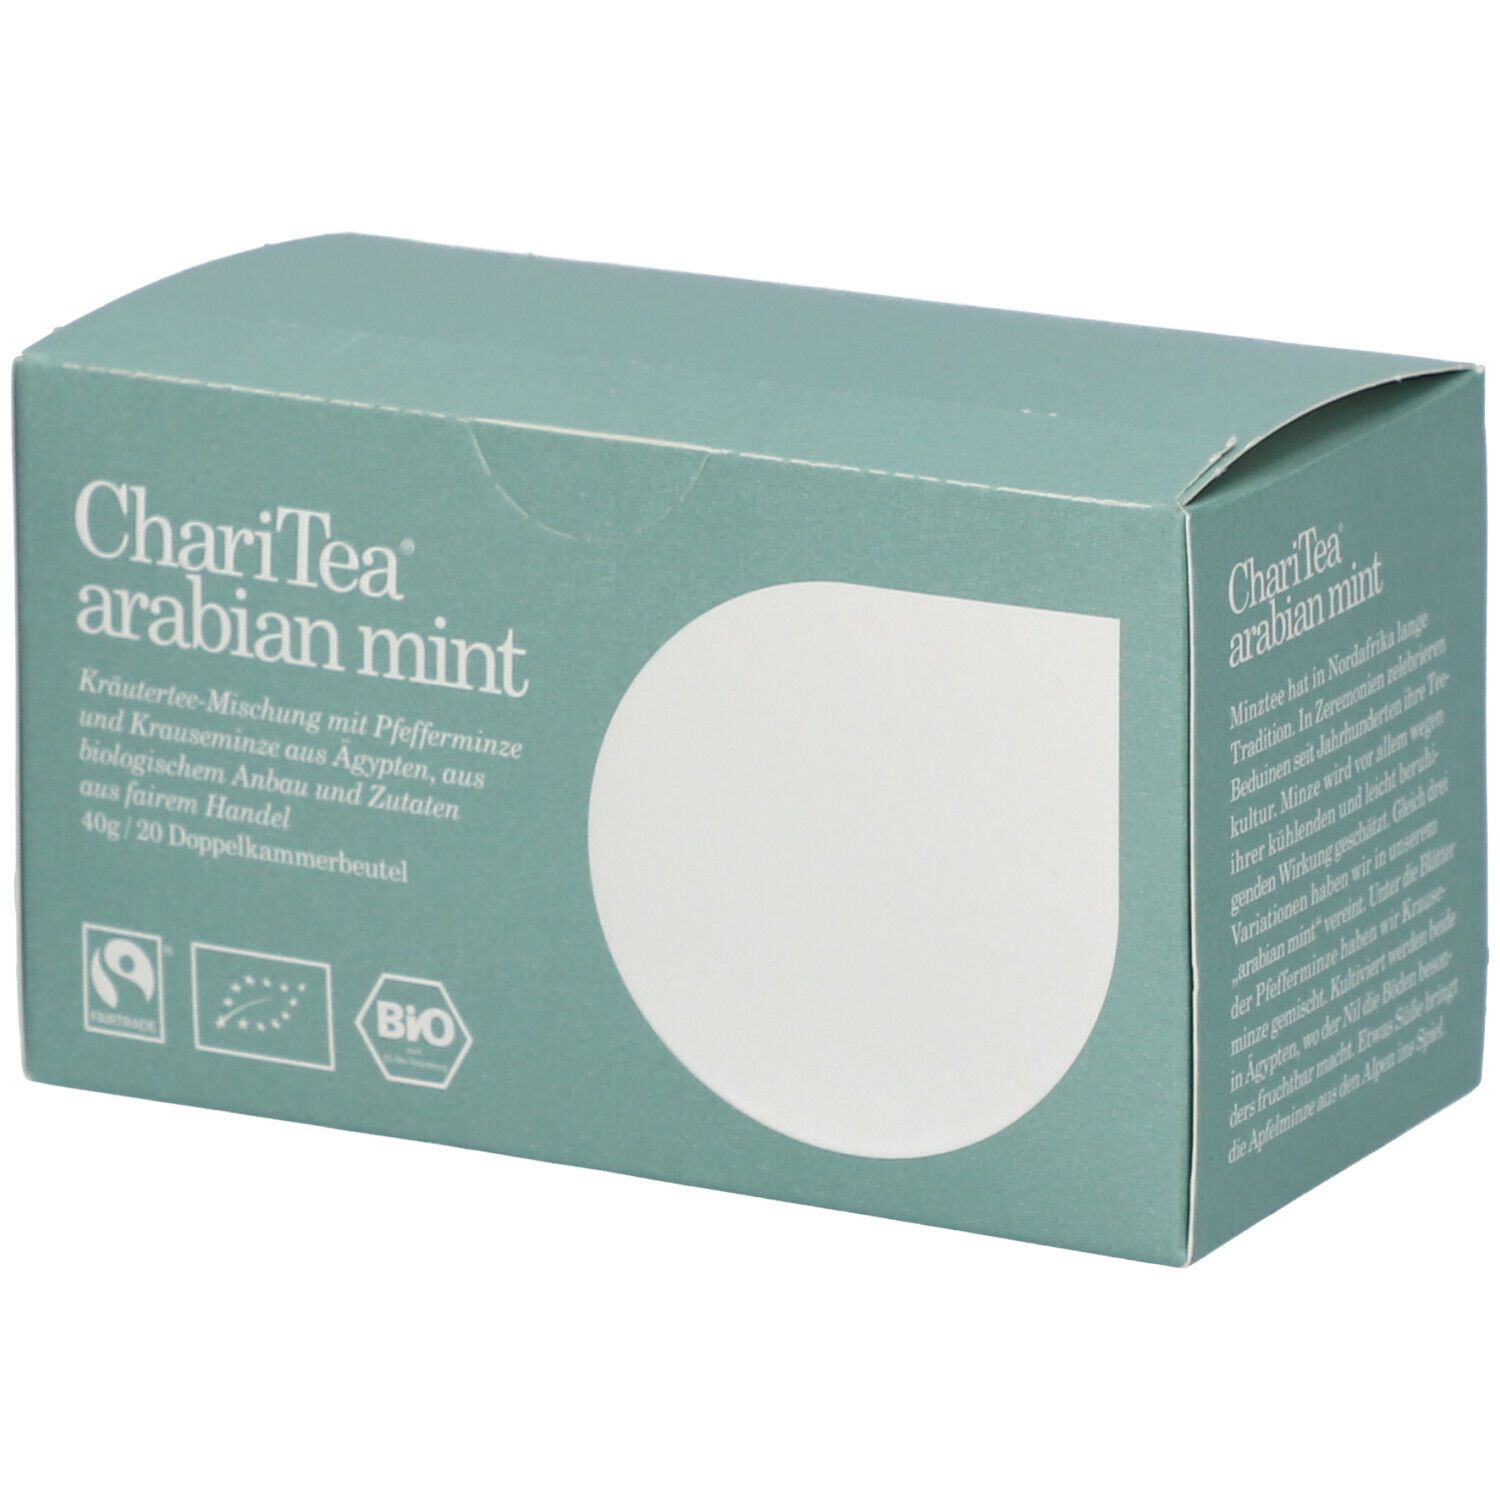 Image of ChariTea® arabian mint